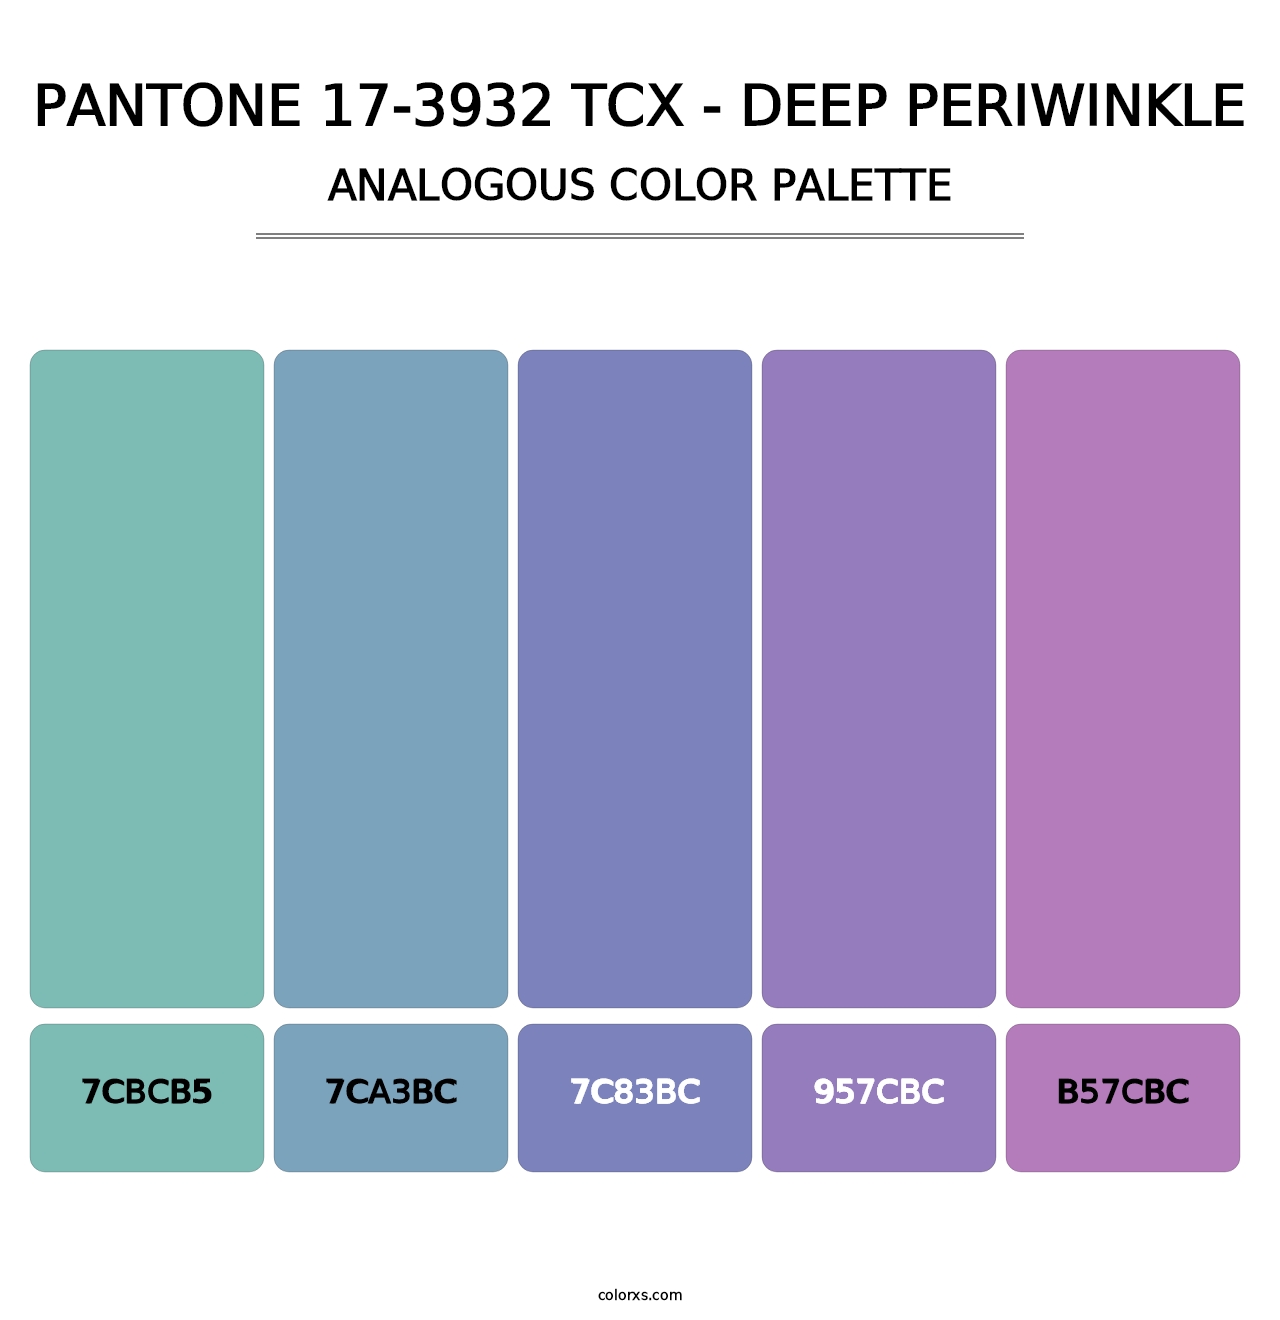 PANTONE 17-3932 TCX - Deep Periwinkle - Analogous Color Palette